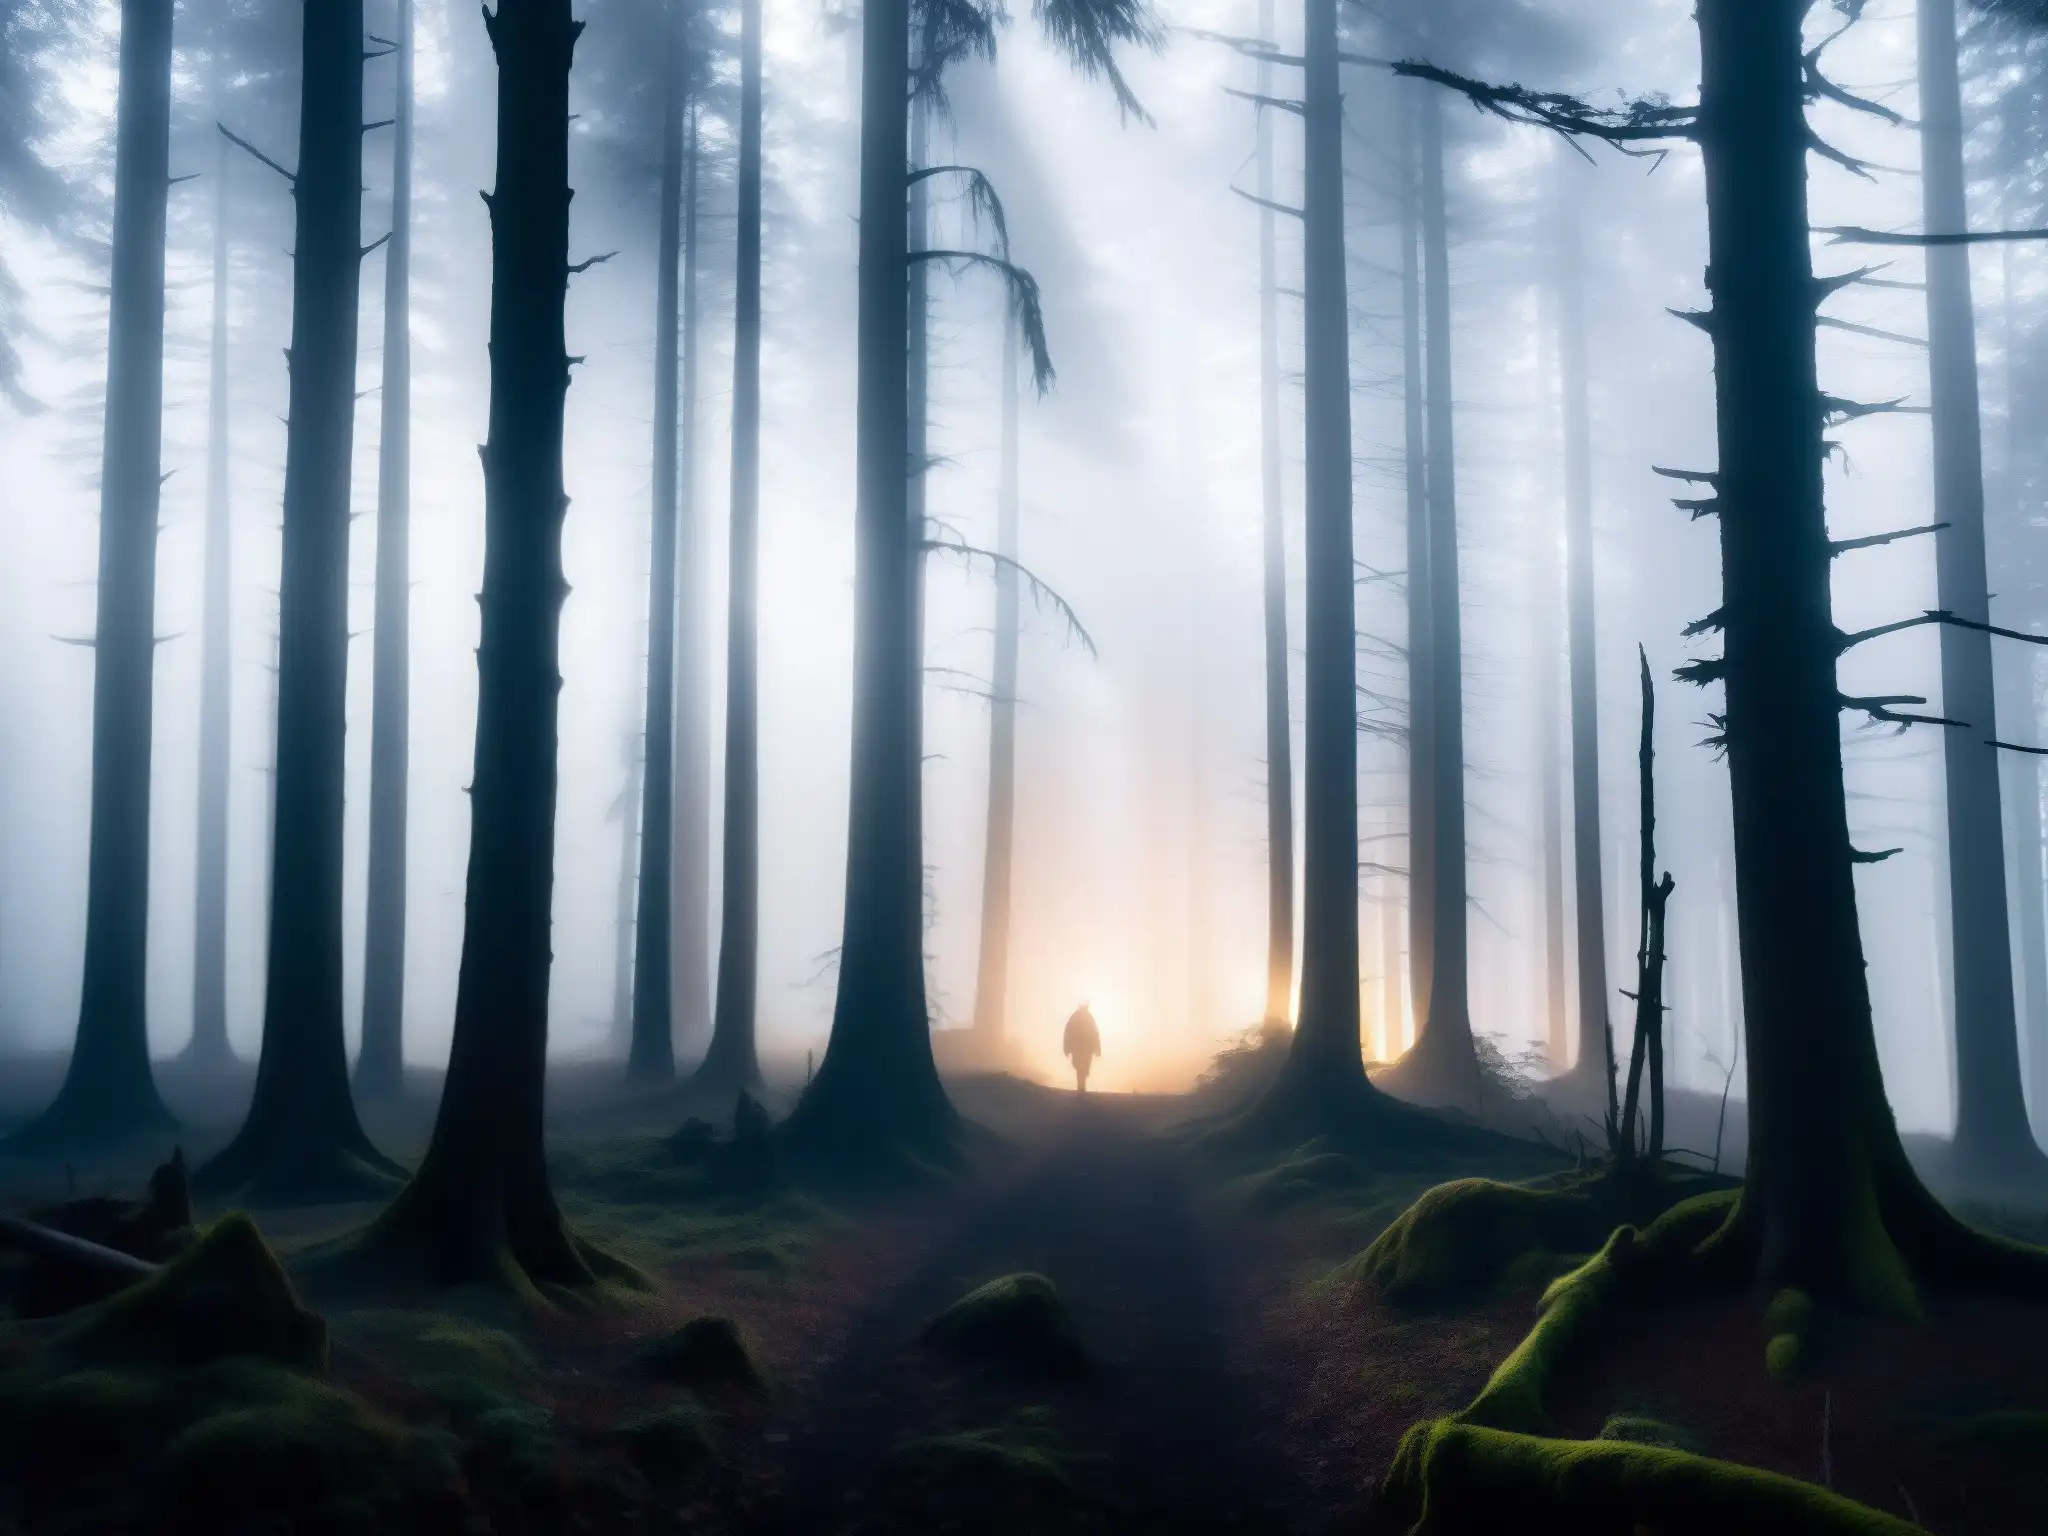 Imagen impactante del bosque en la noche, con neblina y una criatura misteriosa